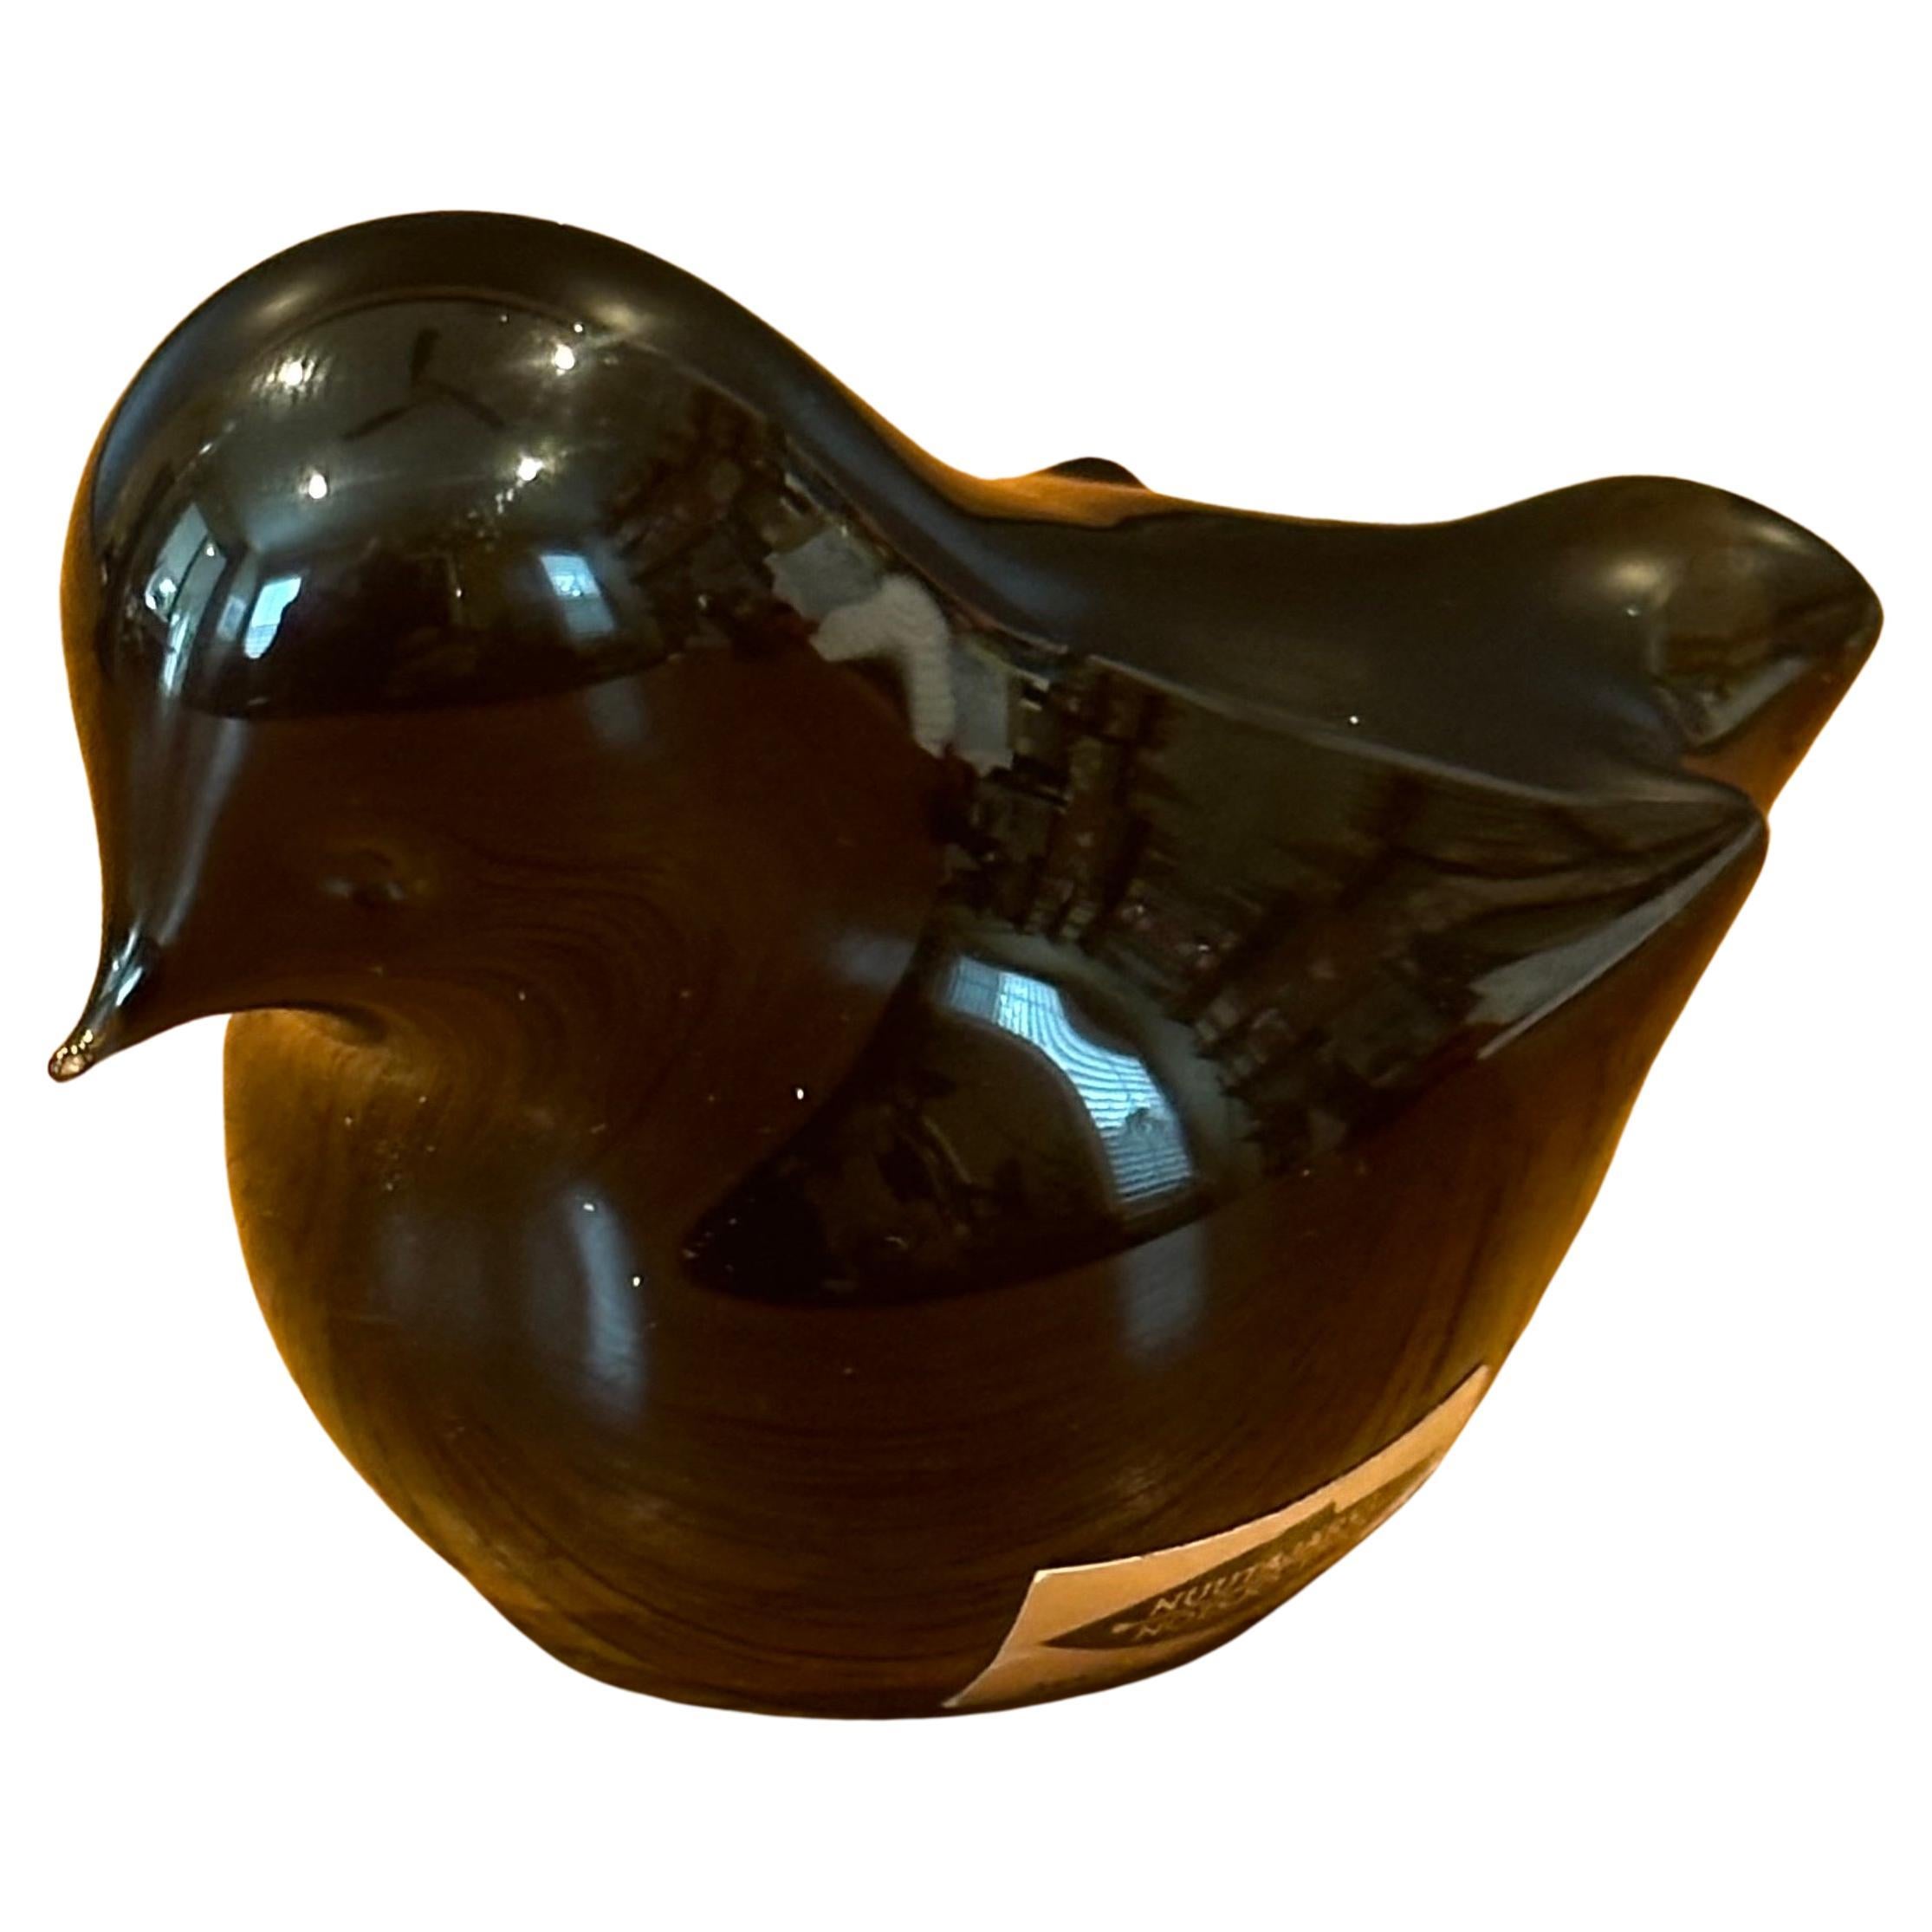 Magnifique petit presse-papier / sculpture d'oiseau en verre d'art par Nuutajarvi de Finlande, vers les années 1980. La sculpture est soufflée à la bouche et est en très bon état, sans éclats ni fissures. La pièce mesure 3 